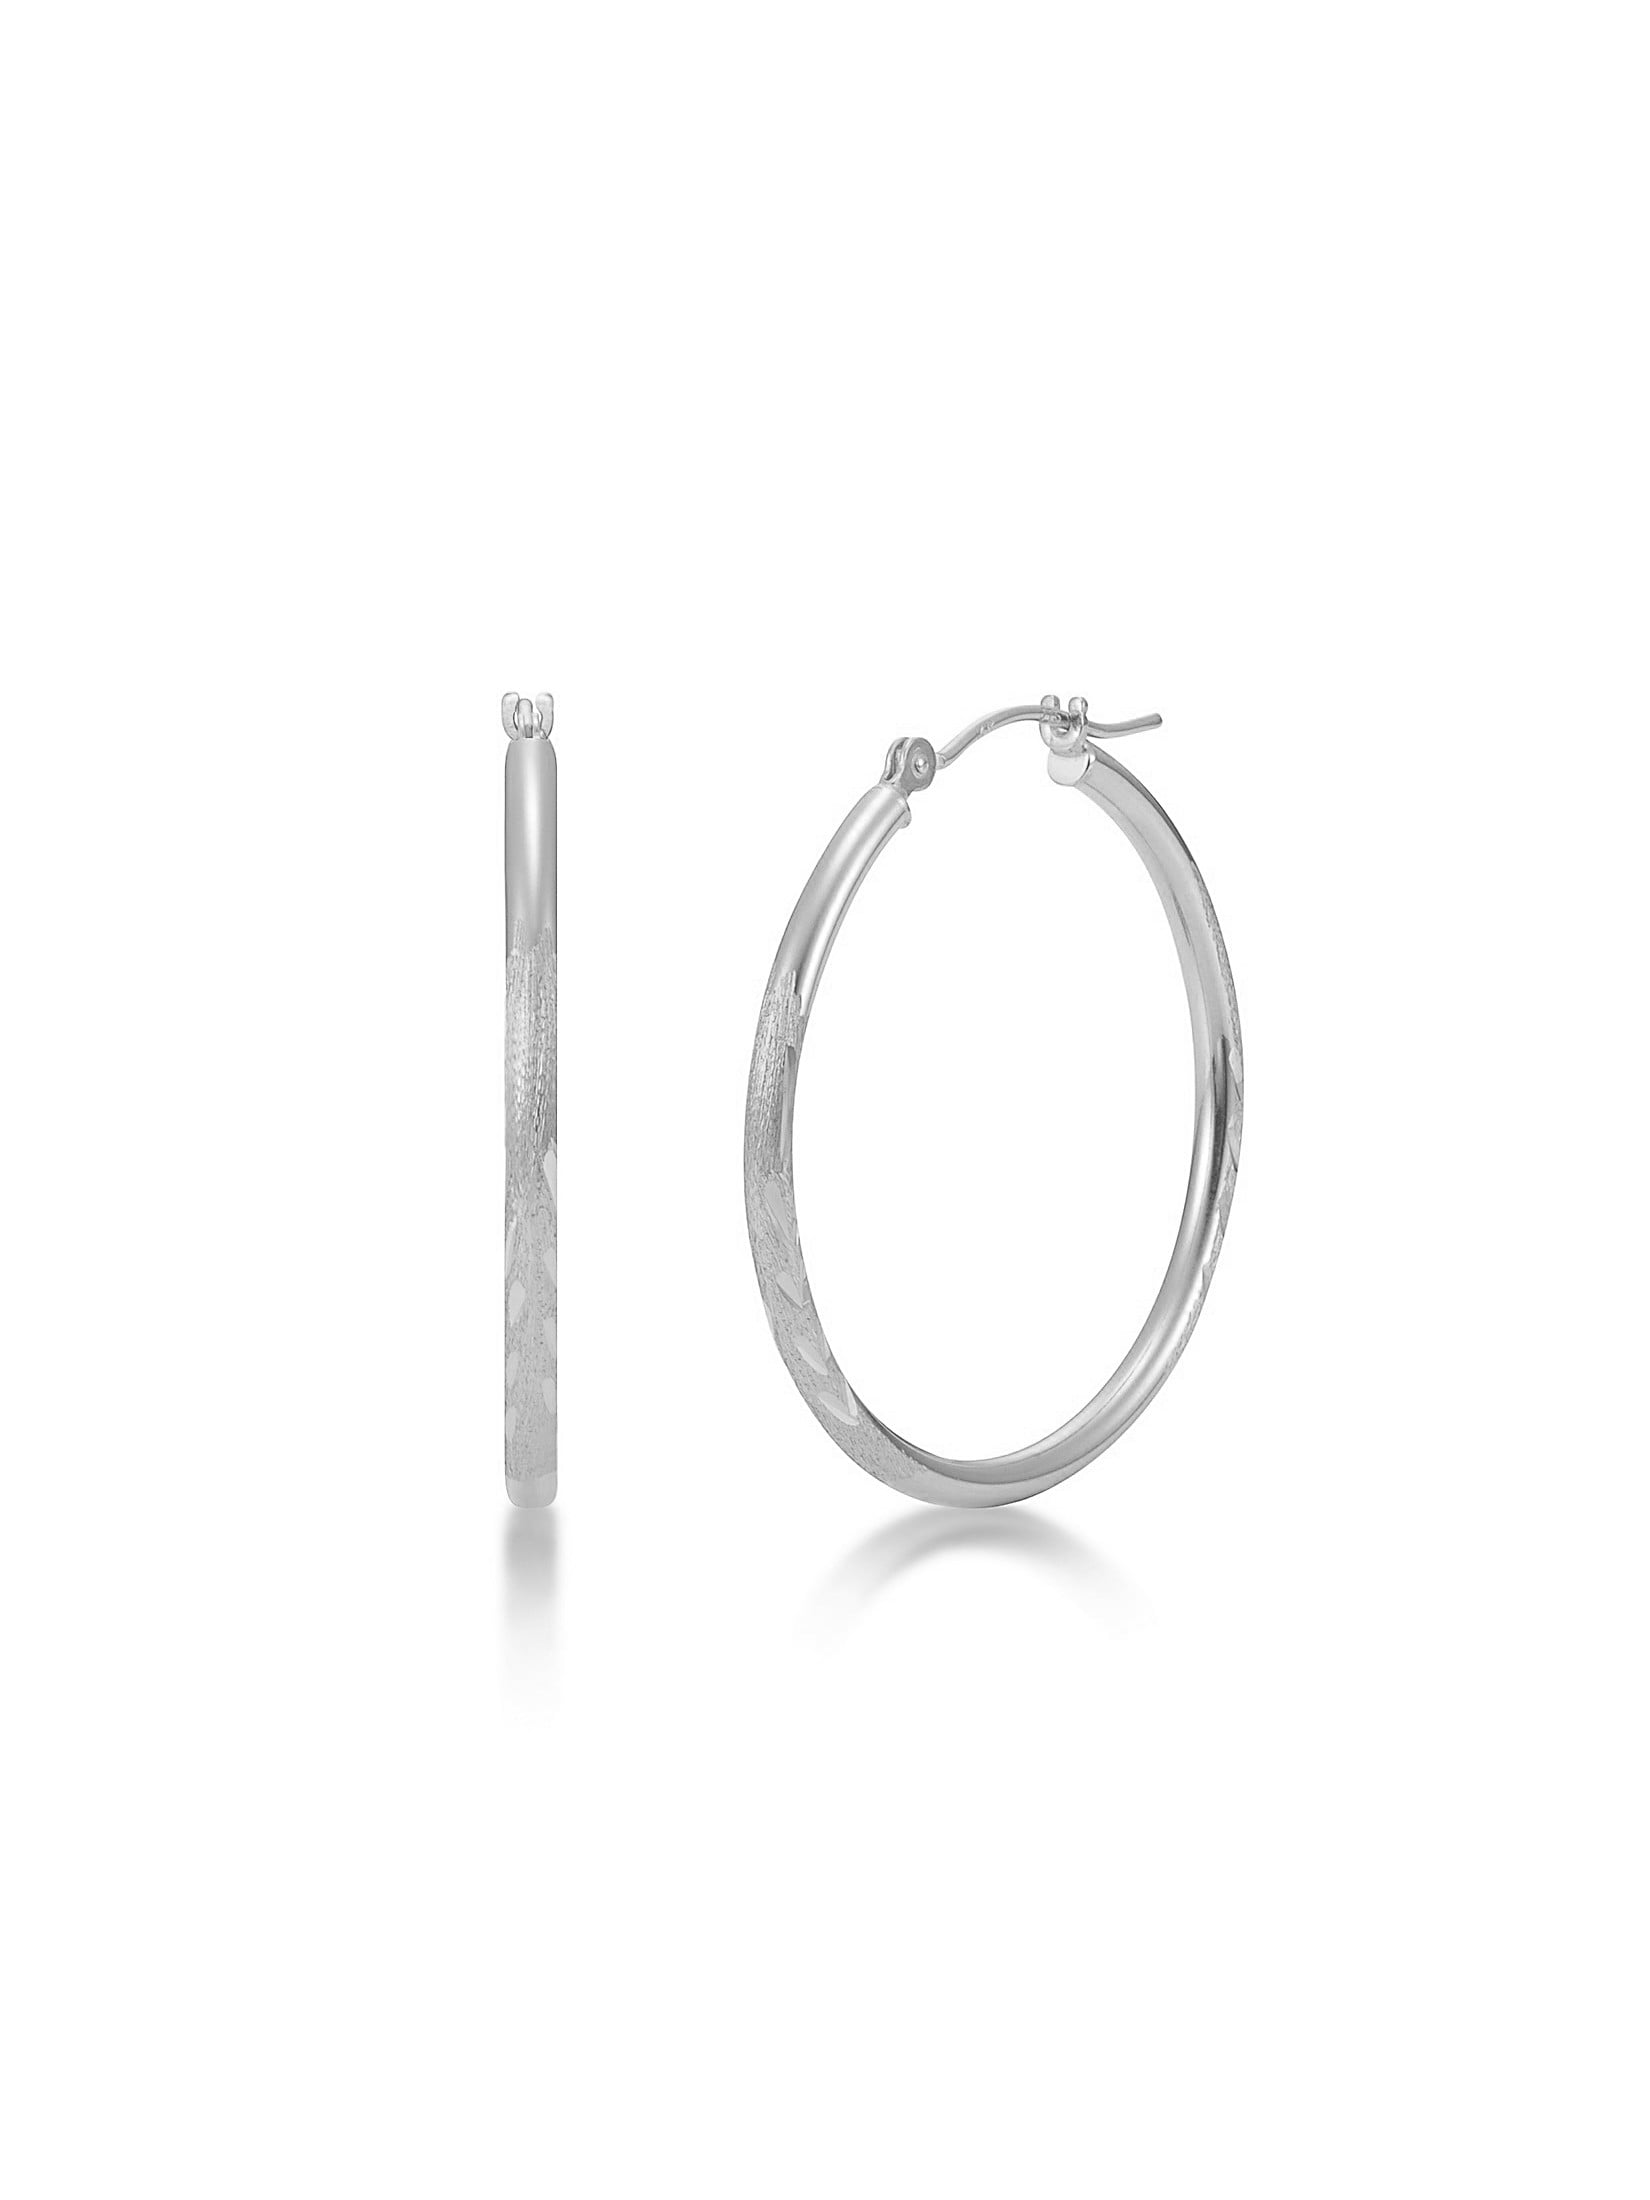 10k White Gold Satin & Diamond-cut 3mm Round Hoop Earrings Length 30mm